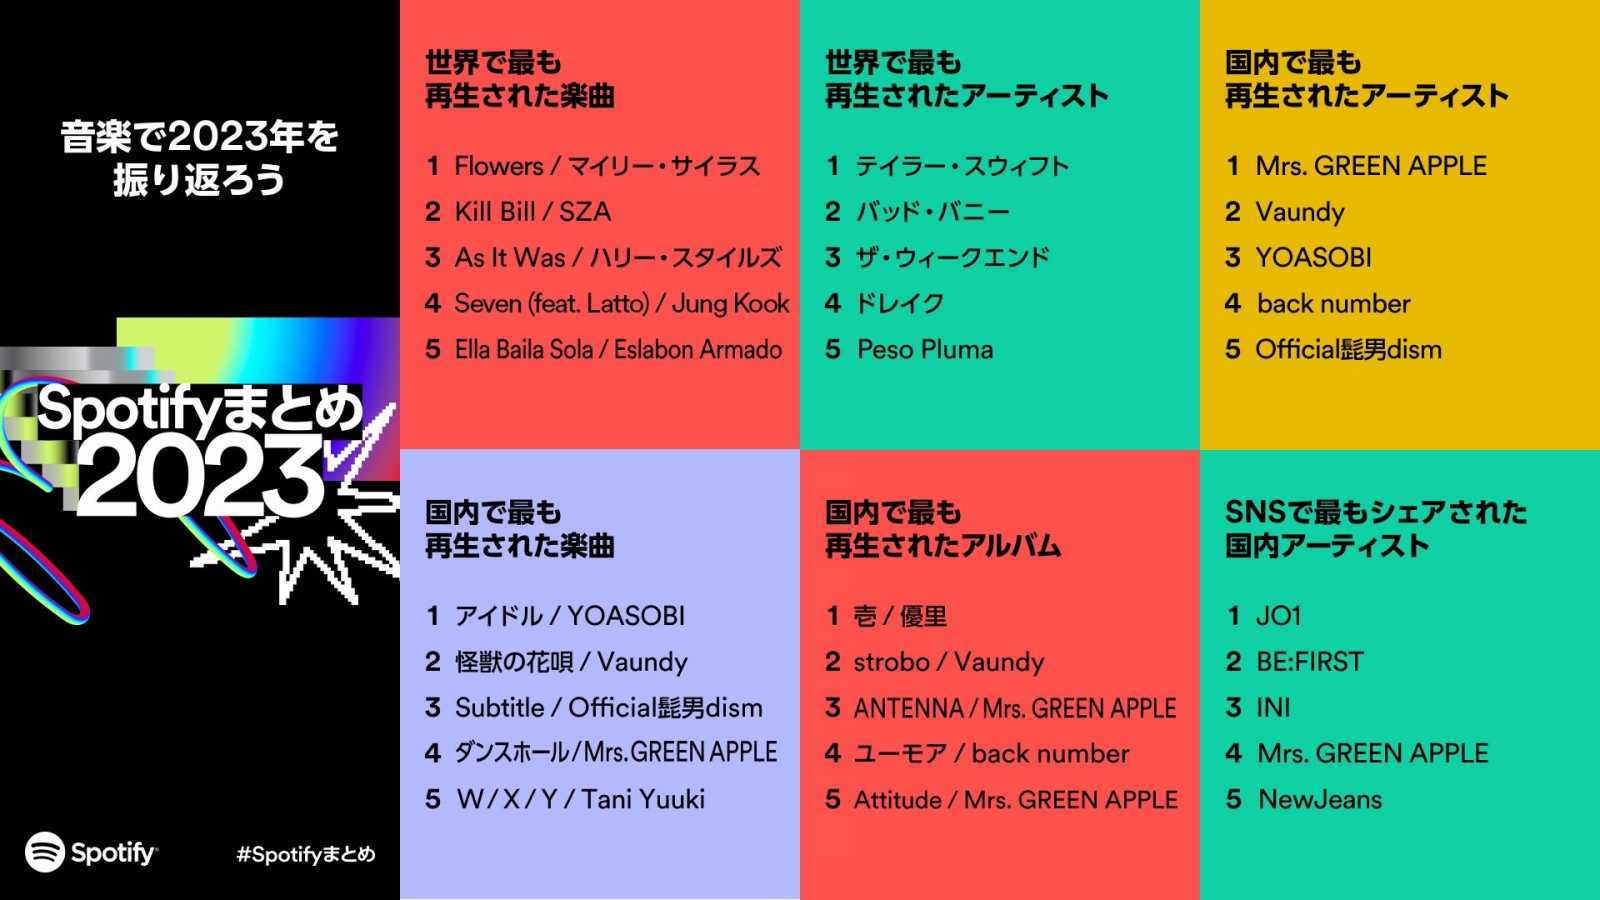 Spotify revela lista dos artistas, músicas e álbuns mais ouvidos no Japão em 2023 © Spotify. All rights reserved.